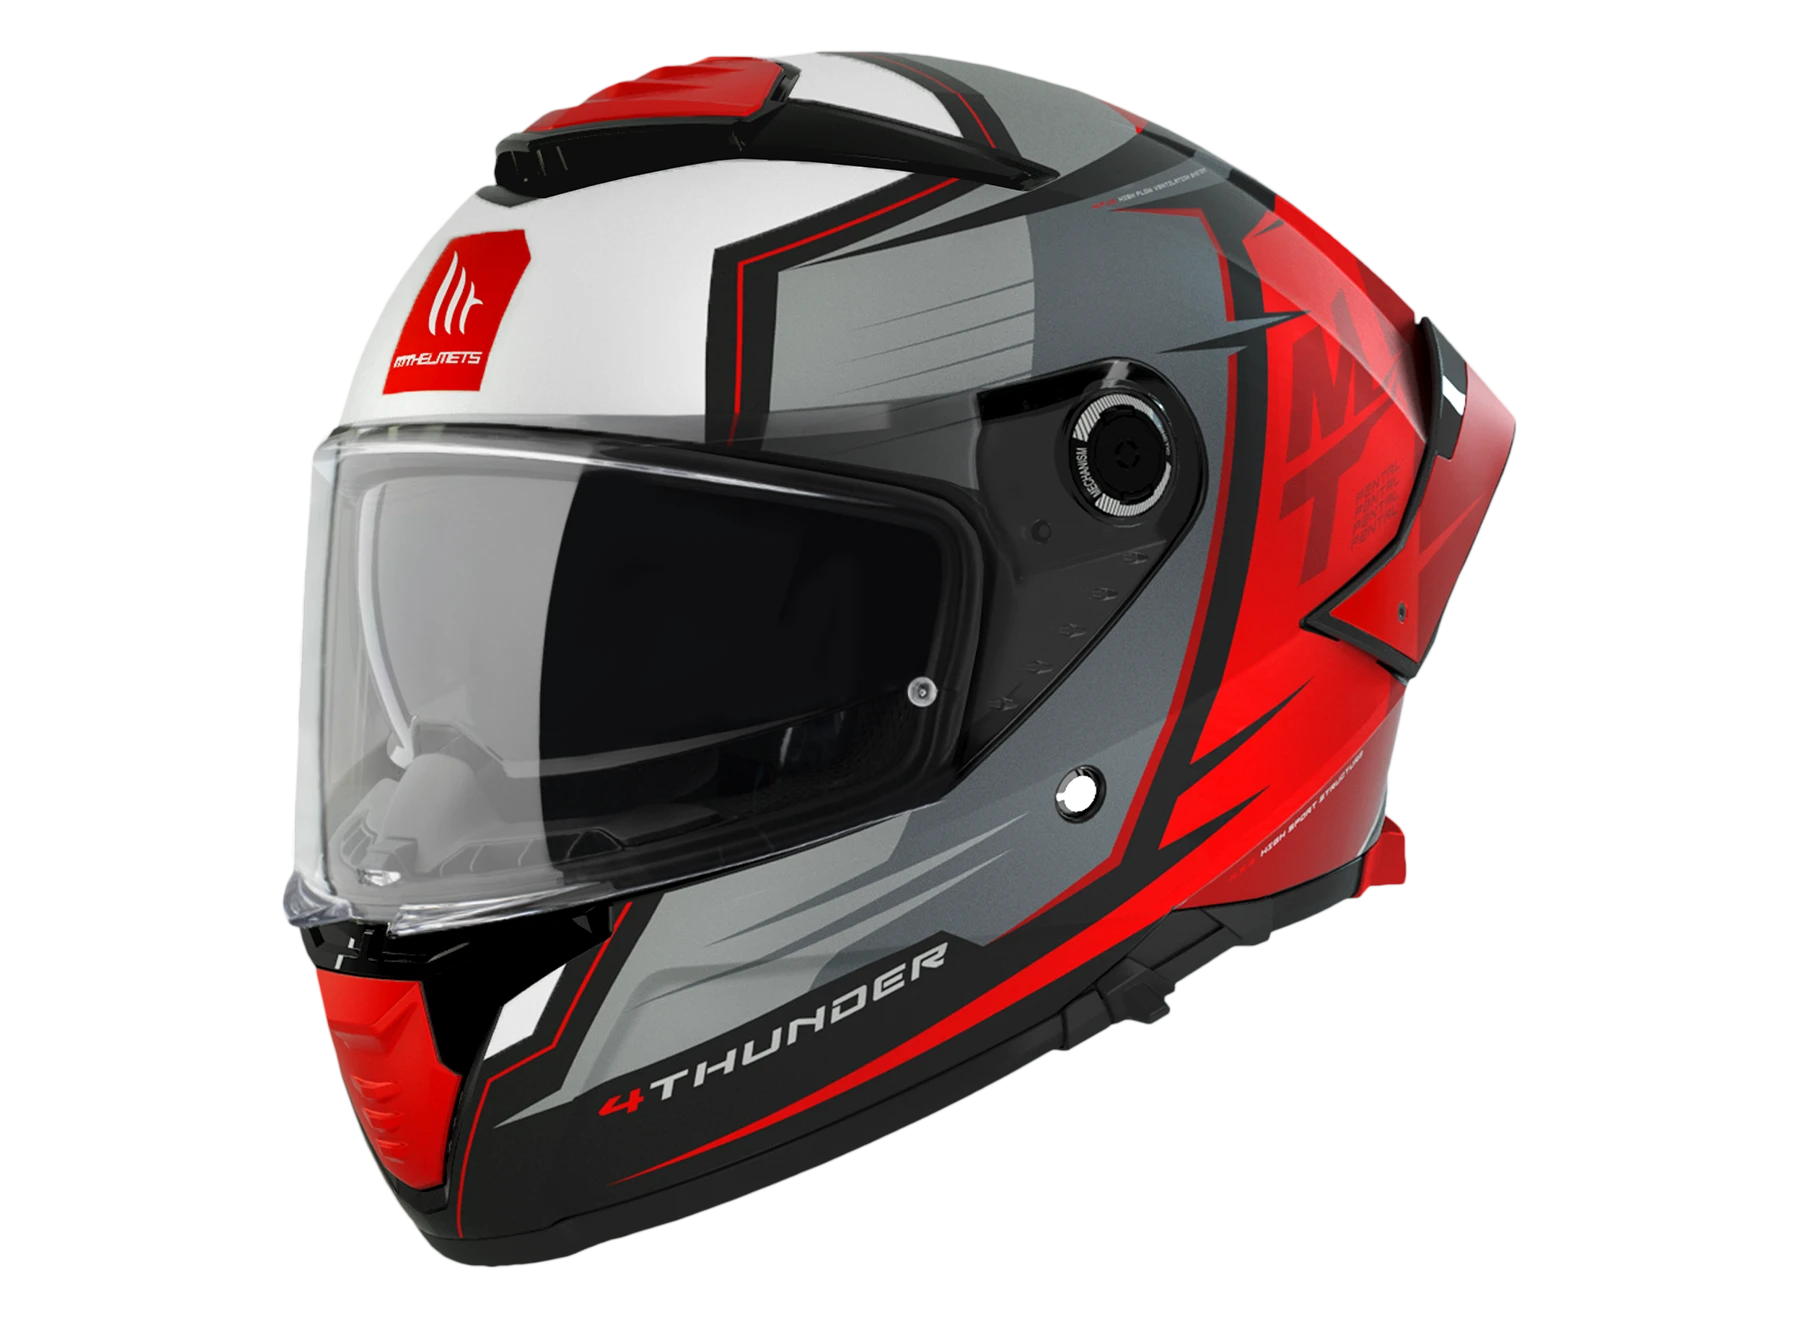 MT Helmets - THUNDER4, PENTAL B5 - White Red